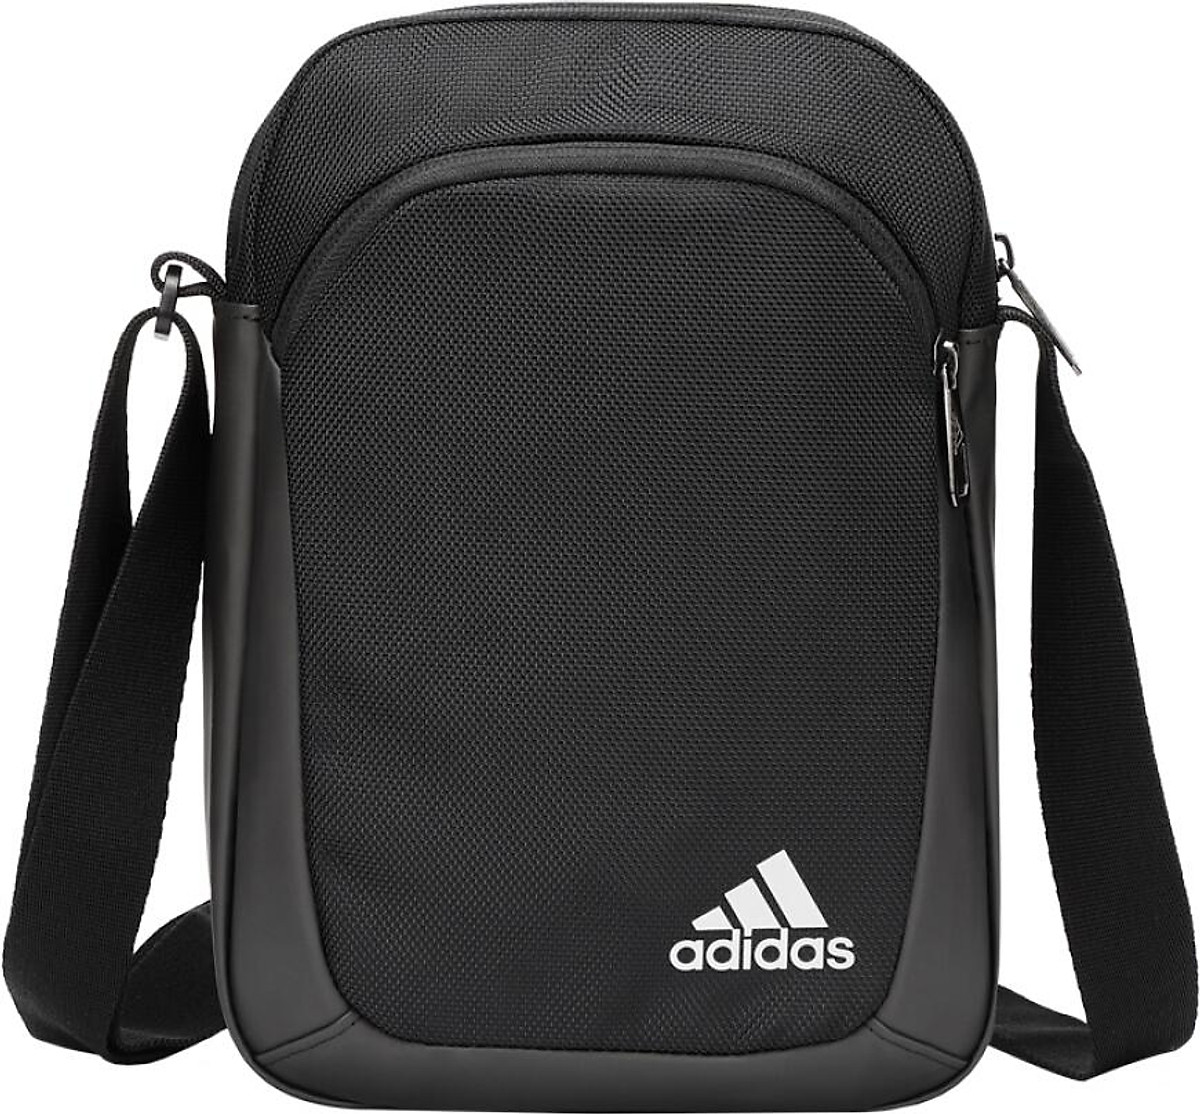 Jual Adidas Archive Unisex Shoulder Bag - Black | Sports Station